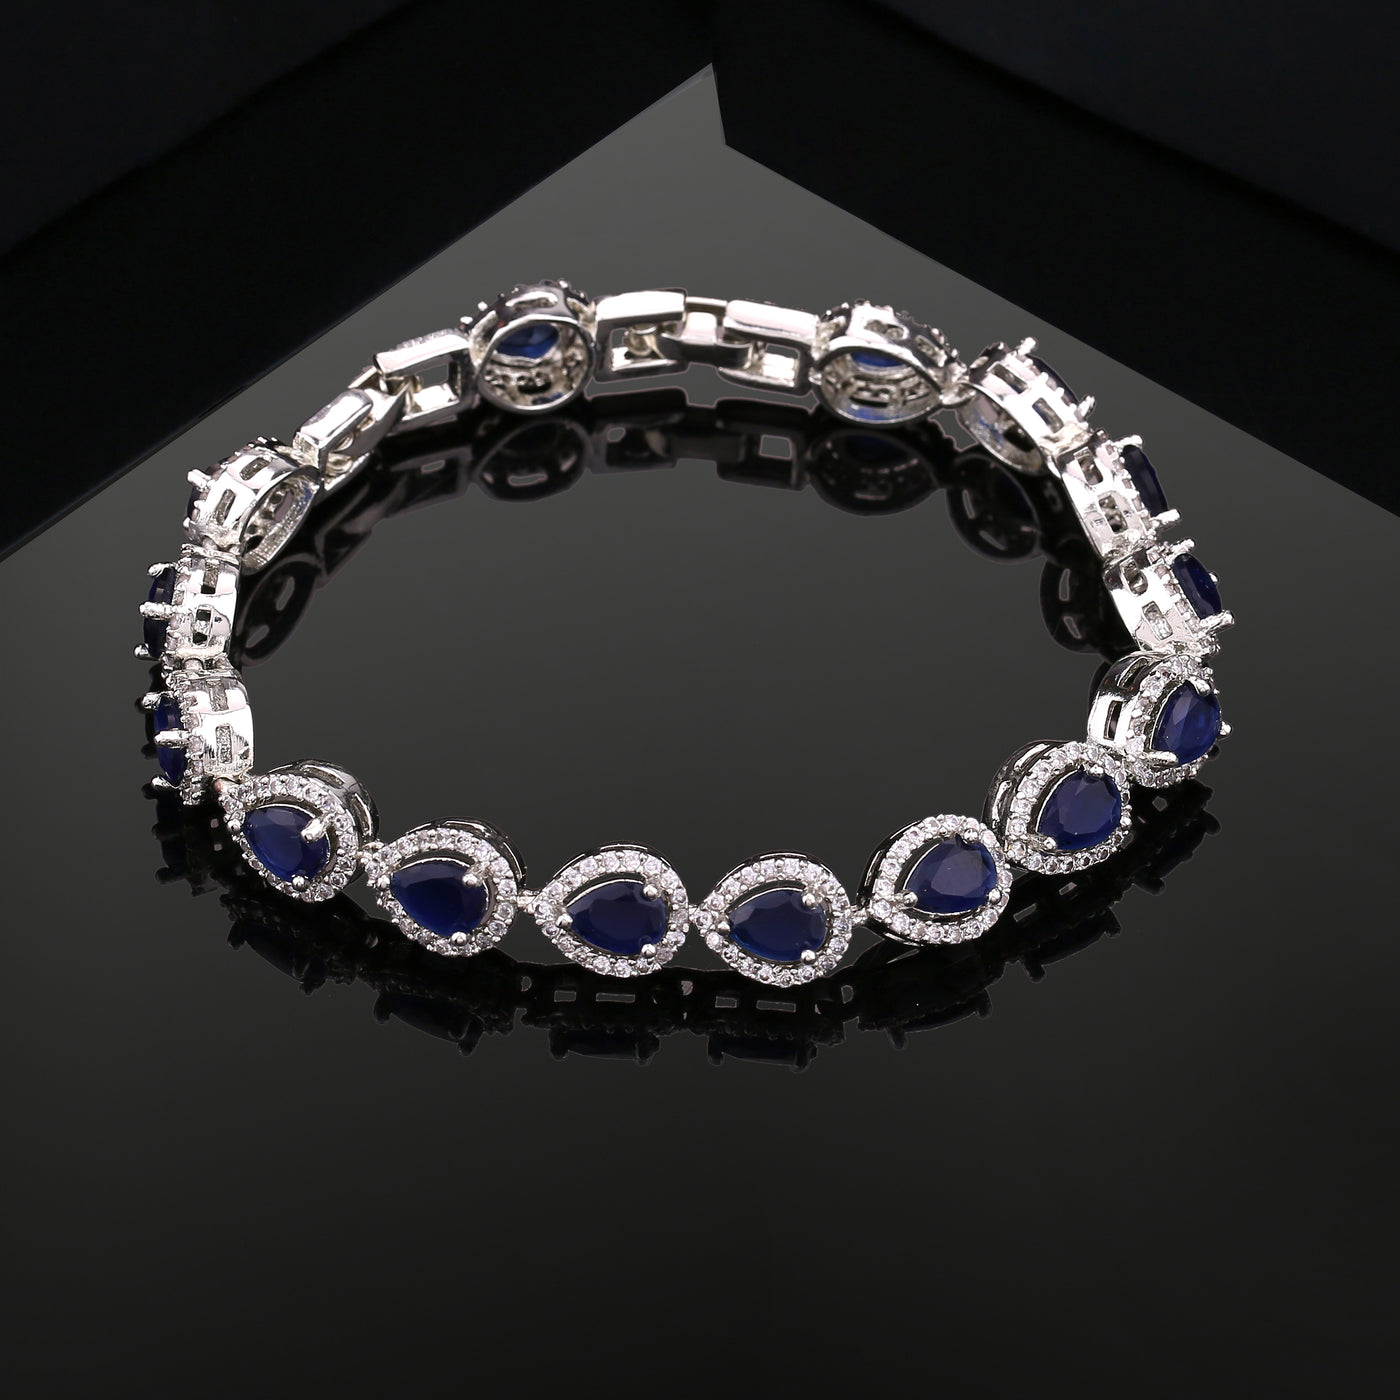 Estele Rhodium Plated CZ Drop Designer Bracelet with Blue Stones for Women